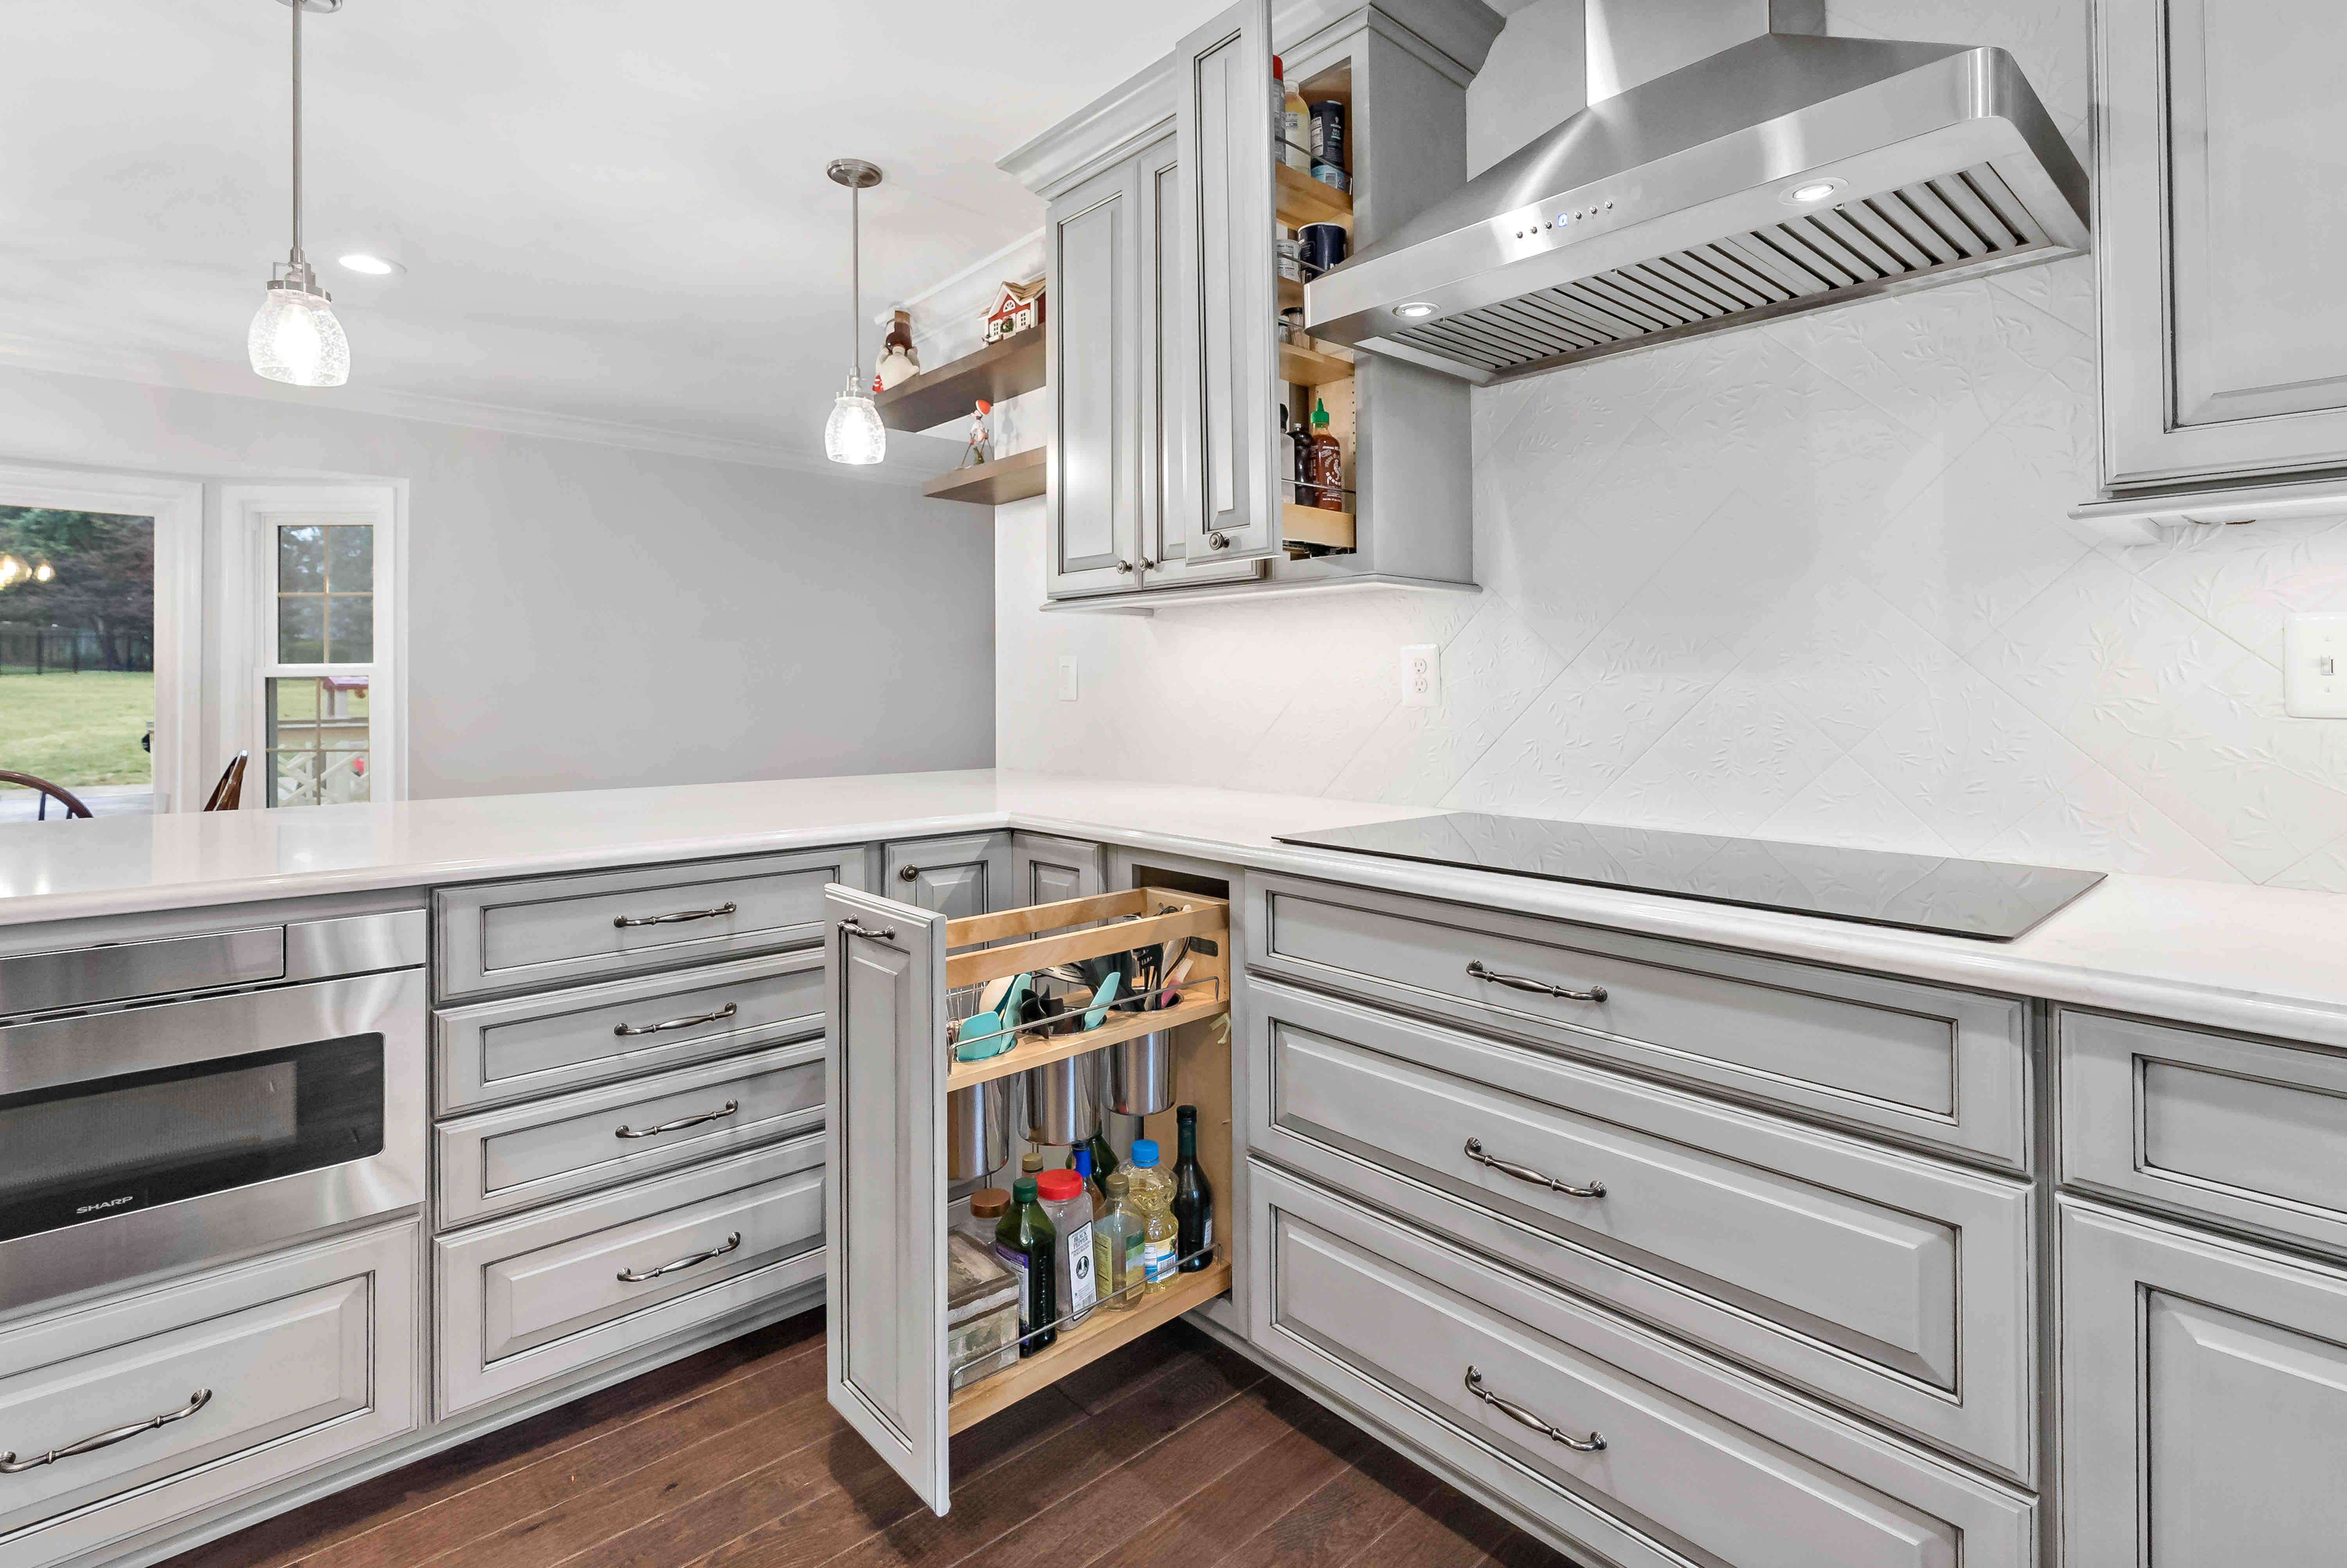 Grey cabinets with dark grey handles in kitchen